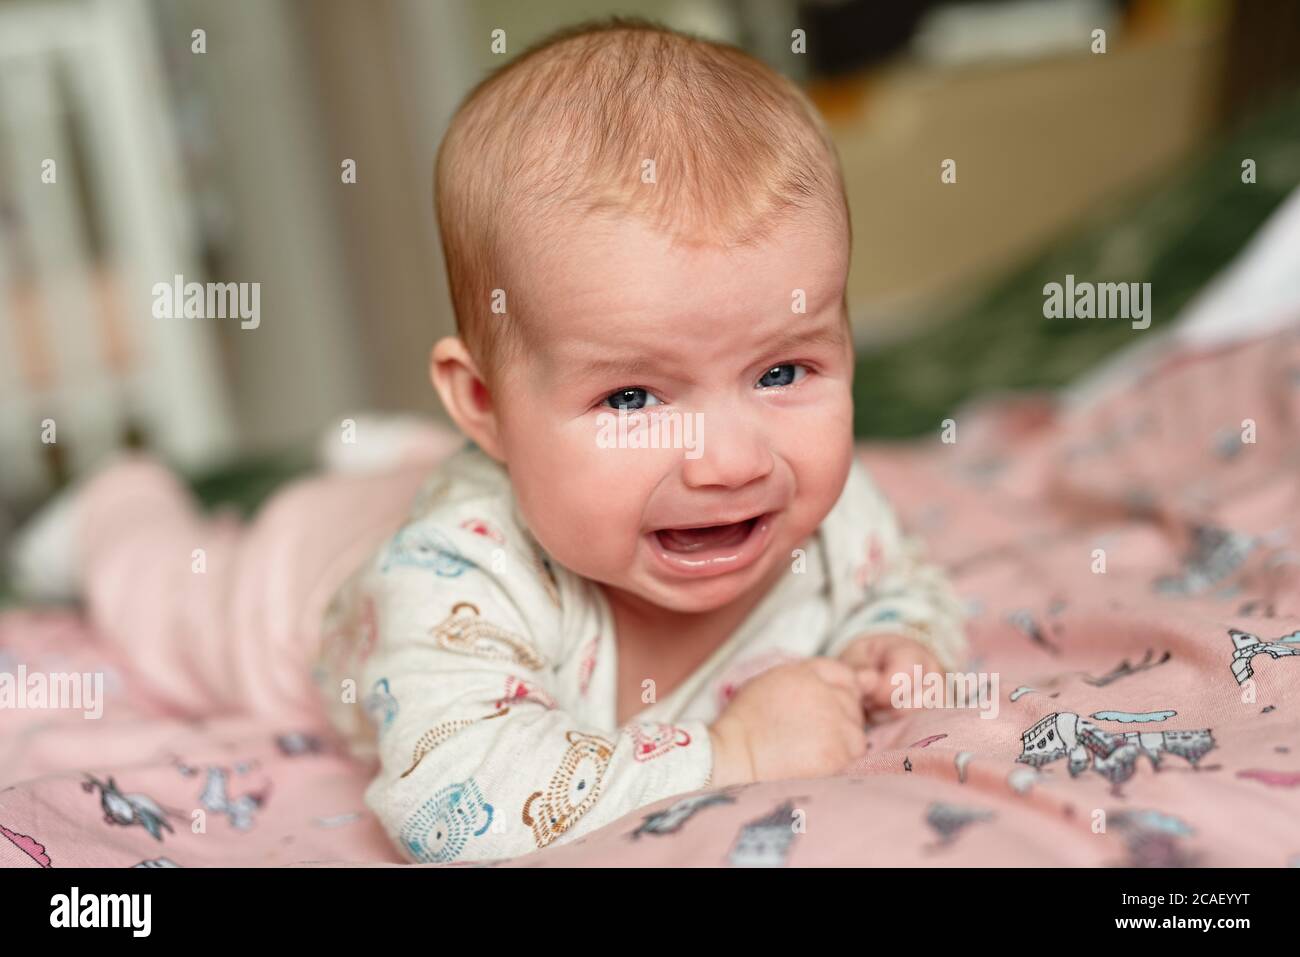 Neugeborenes Weinen, traurige Emotionen, Kind liegt auf dem Bauch kann nicht kriechen, traurig und traurig aussehen Stockfoto